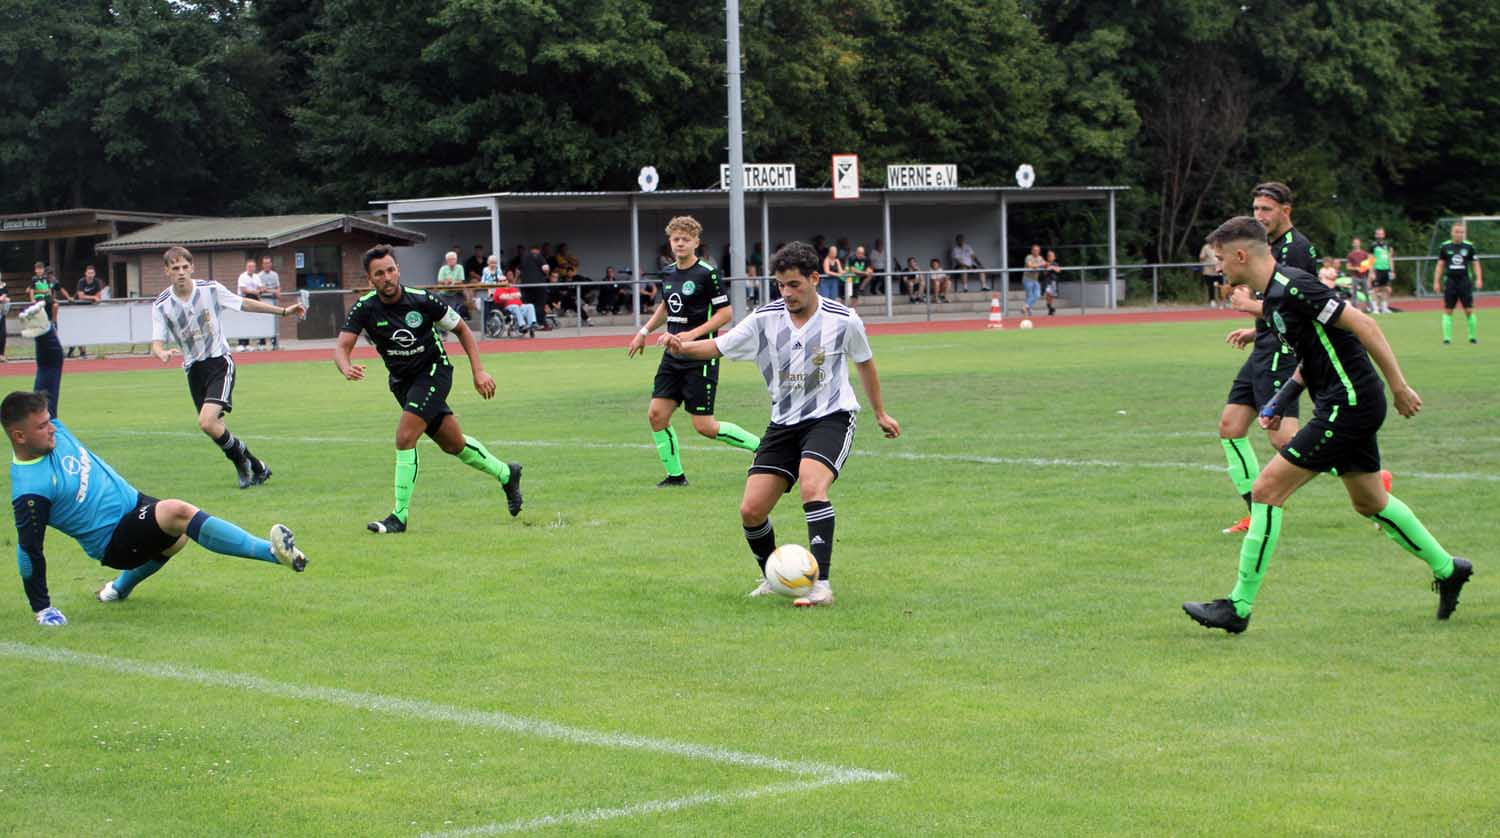 Mirac Kavakbasi (am Ball) erzielt in dieser Situation den Ehrentreffer der Eintracht beim klaren 1:8 gegen den Bezirksligisten SG Massen. Foto: Wagner